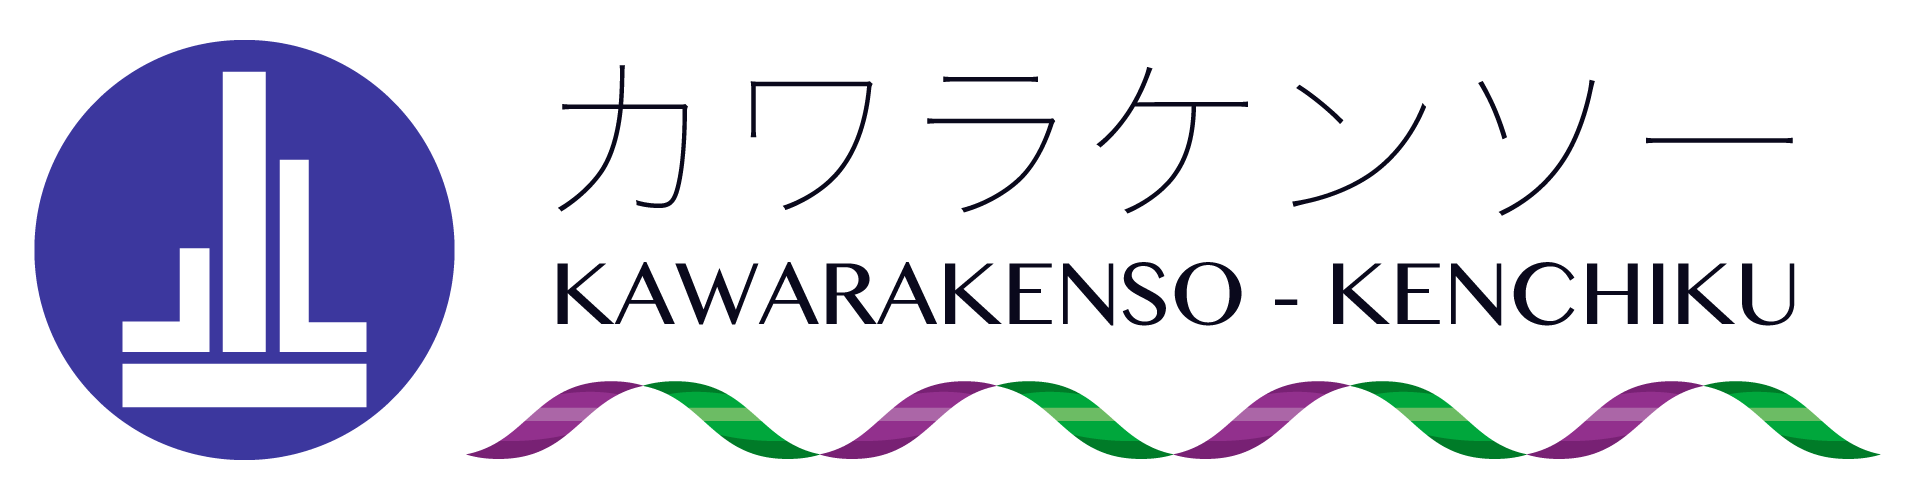 株式会社カワラケンソーのロゴ